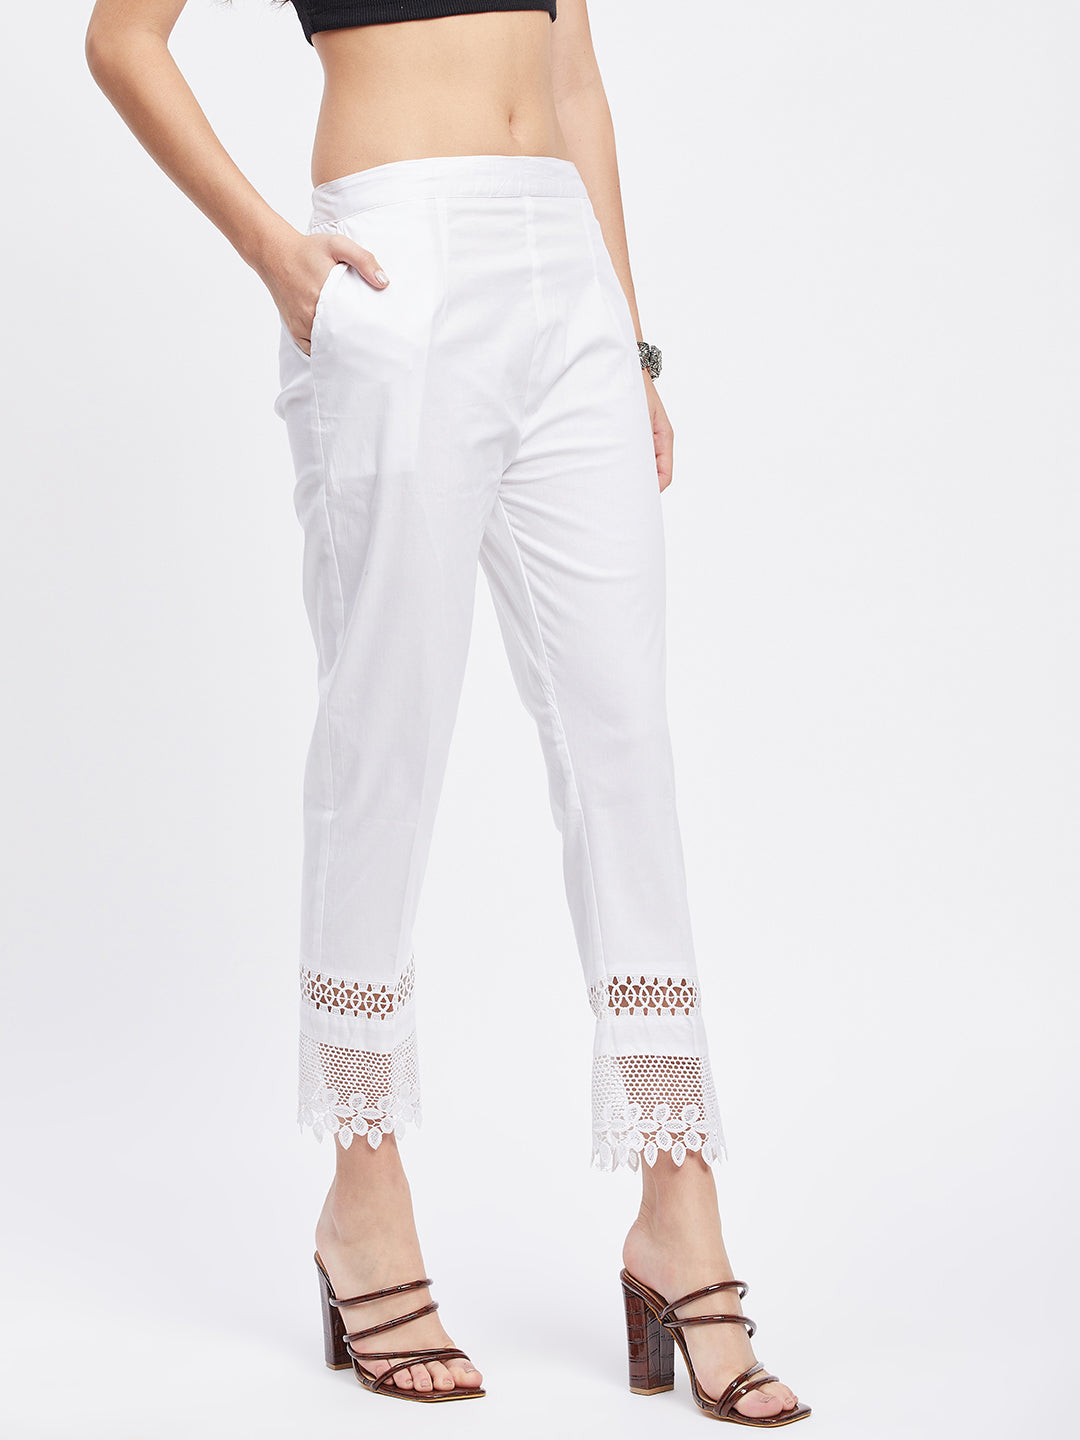 White Solid Hem Design Straight Trouser